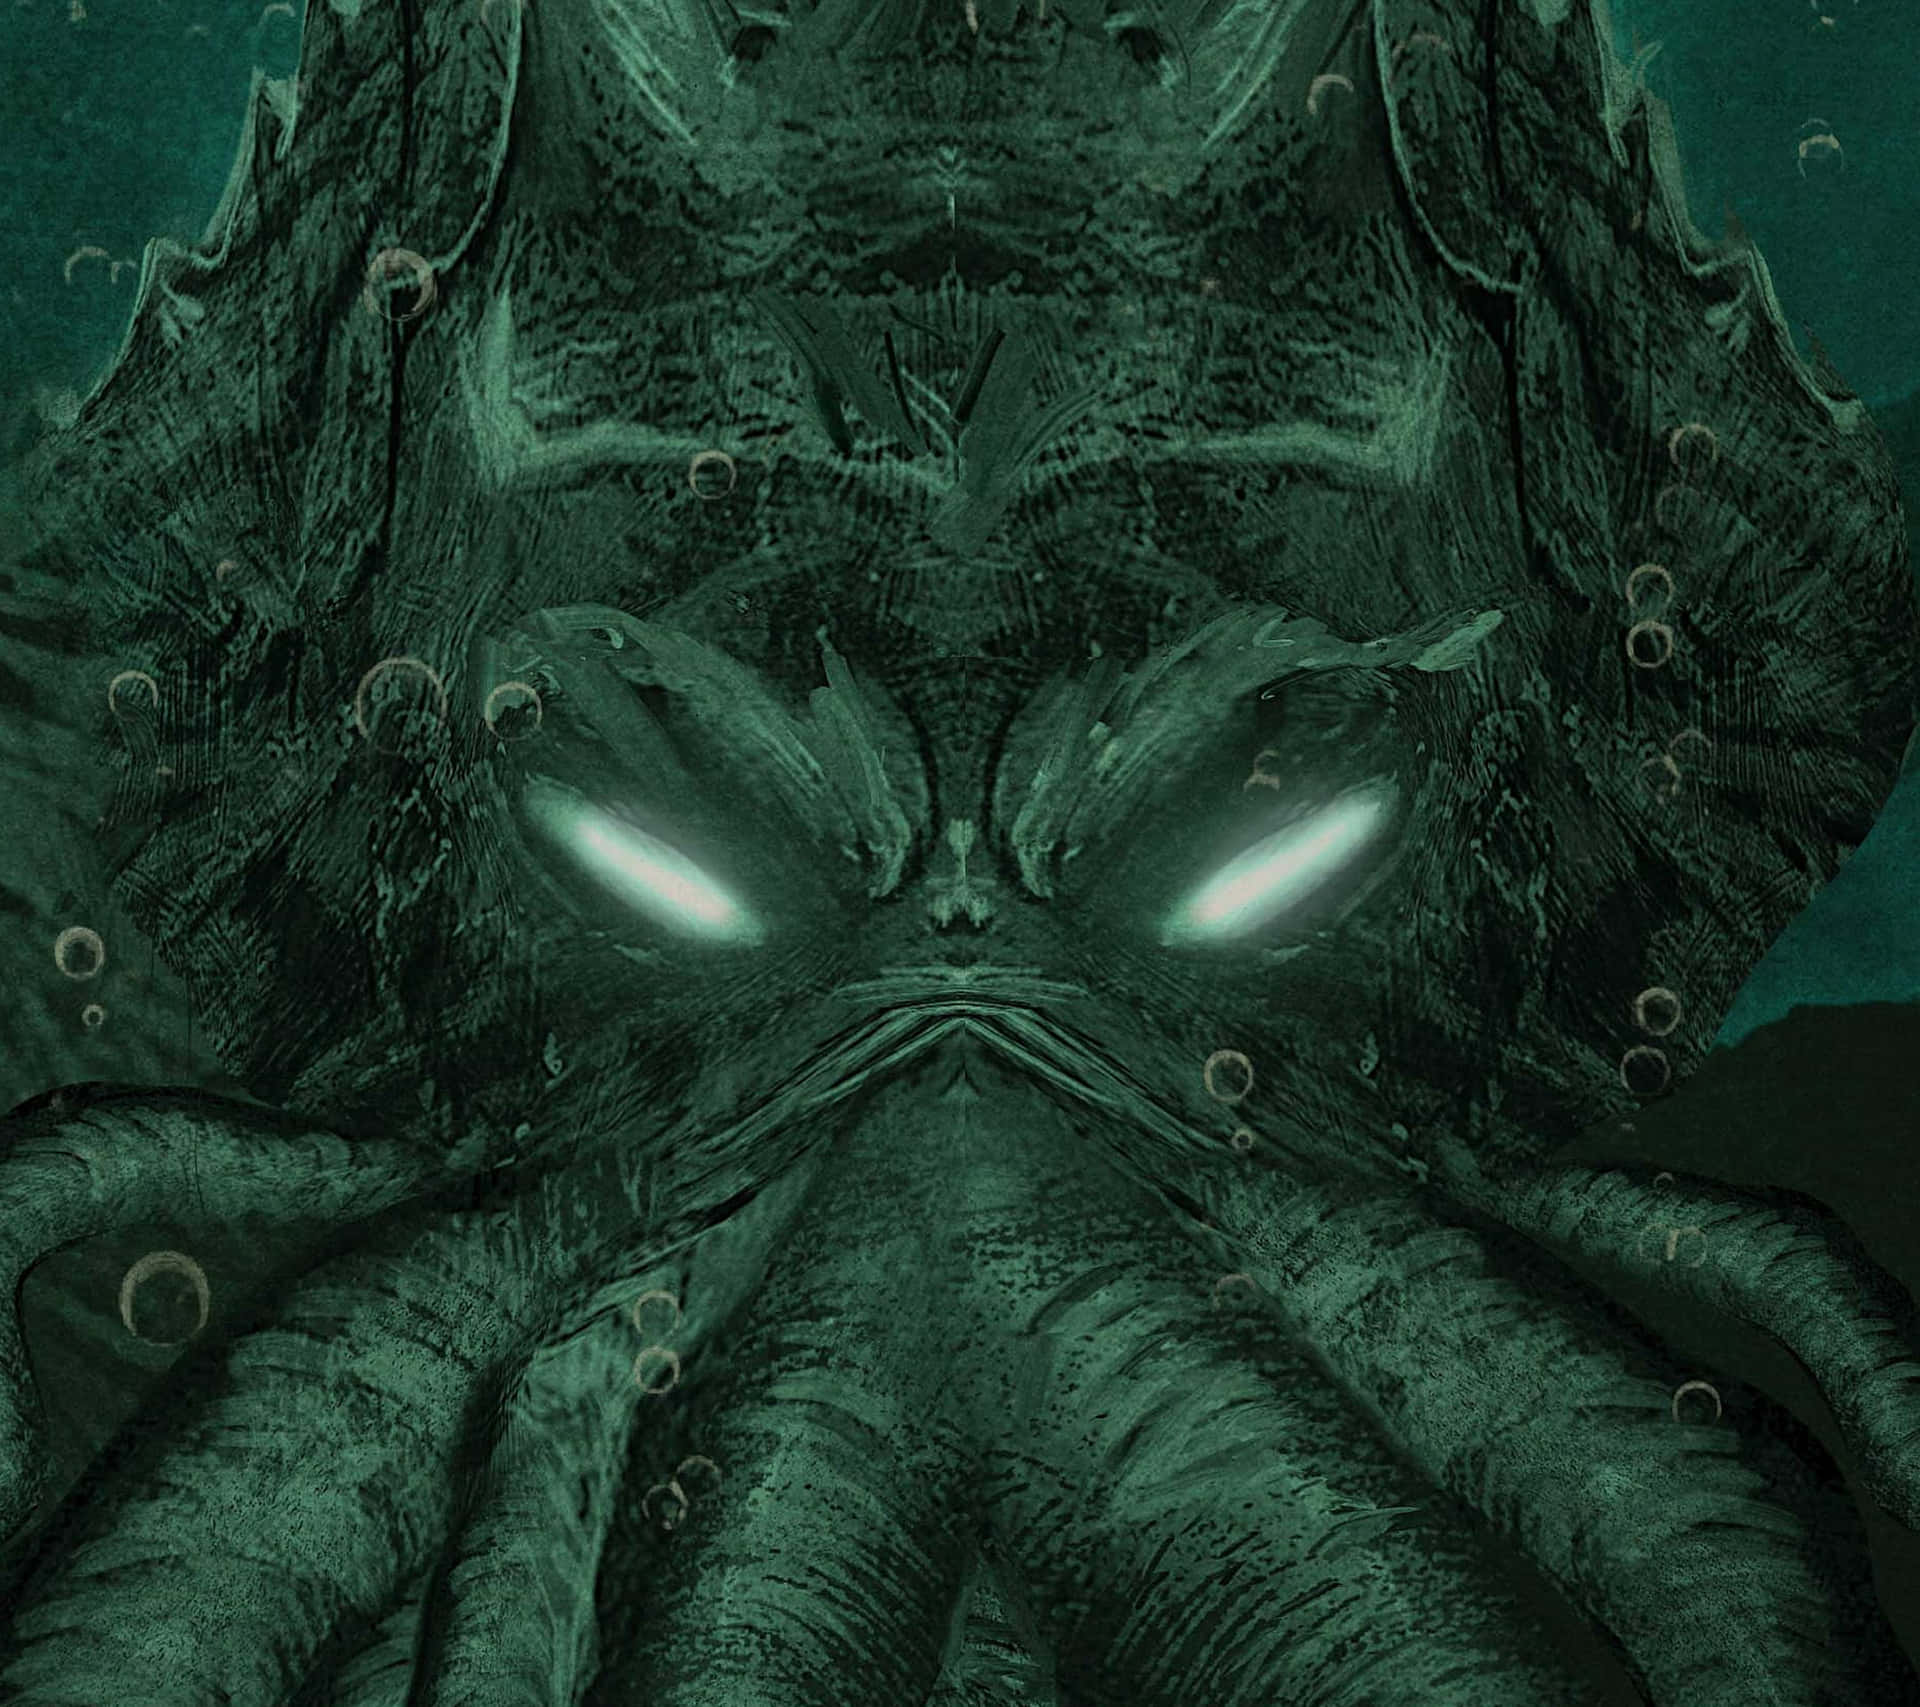 Etbillede Inspireret Af H.p. Lovecraft's Kosmiske Skræk.